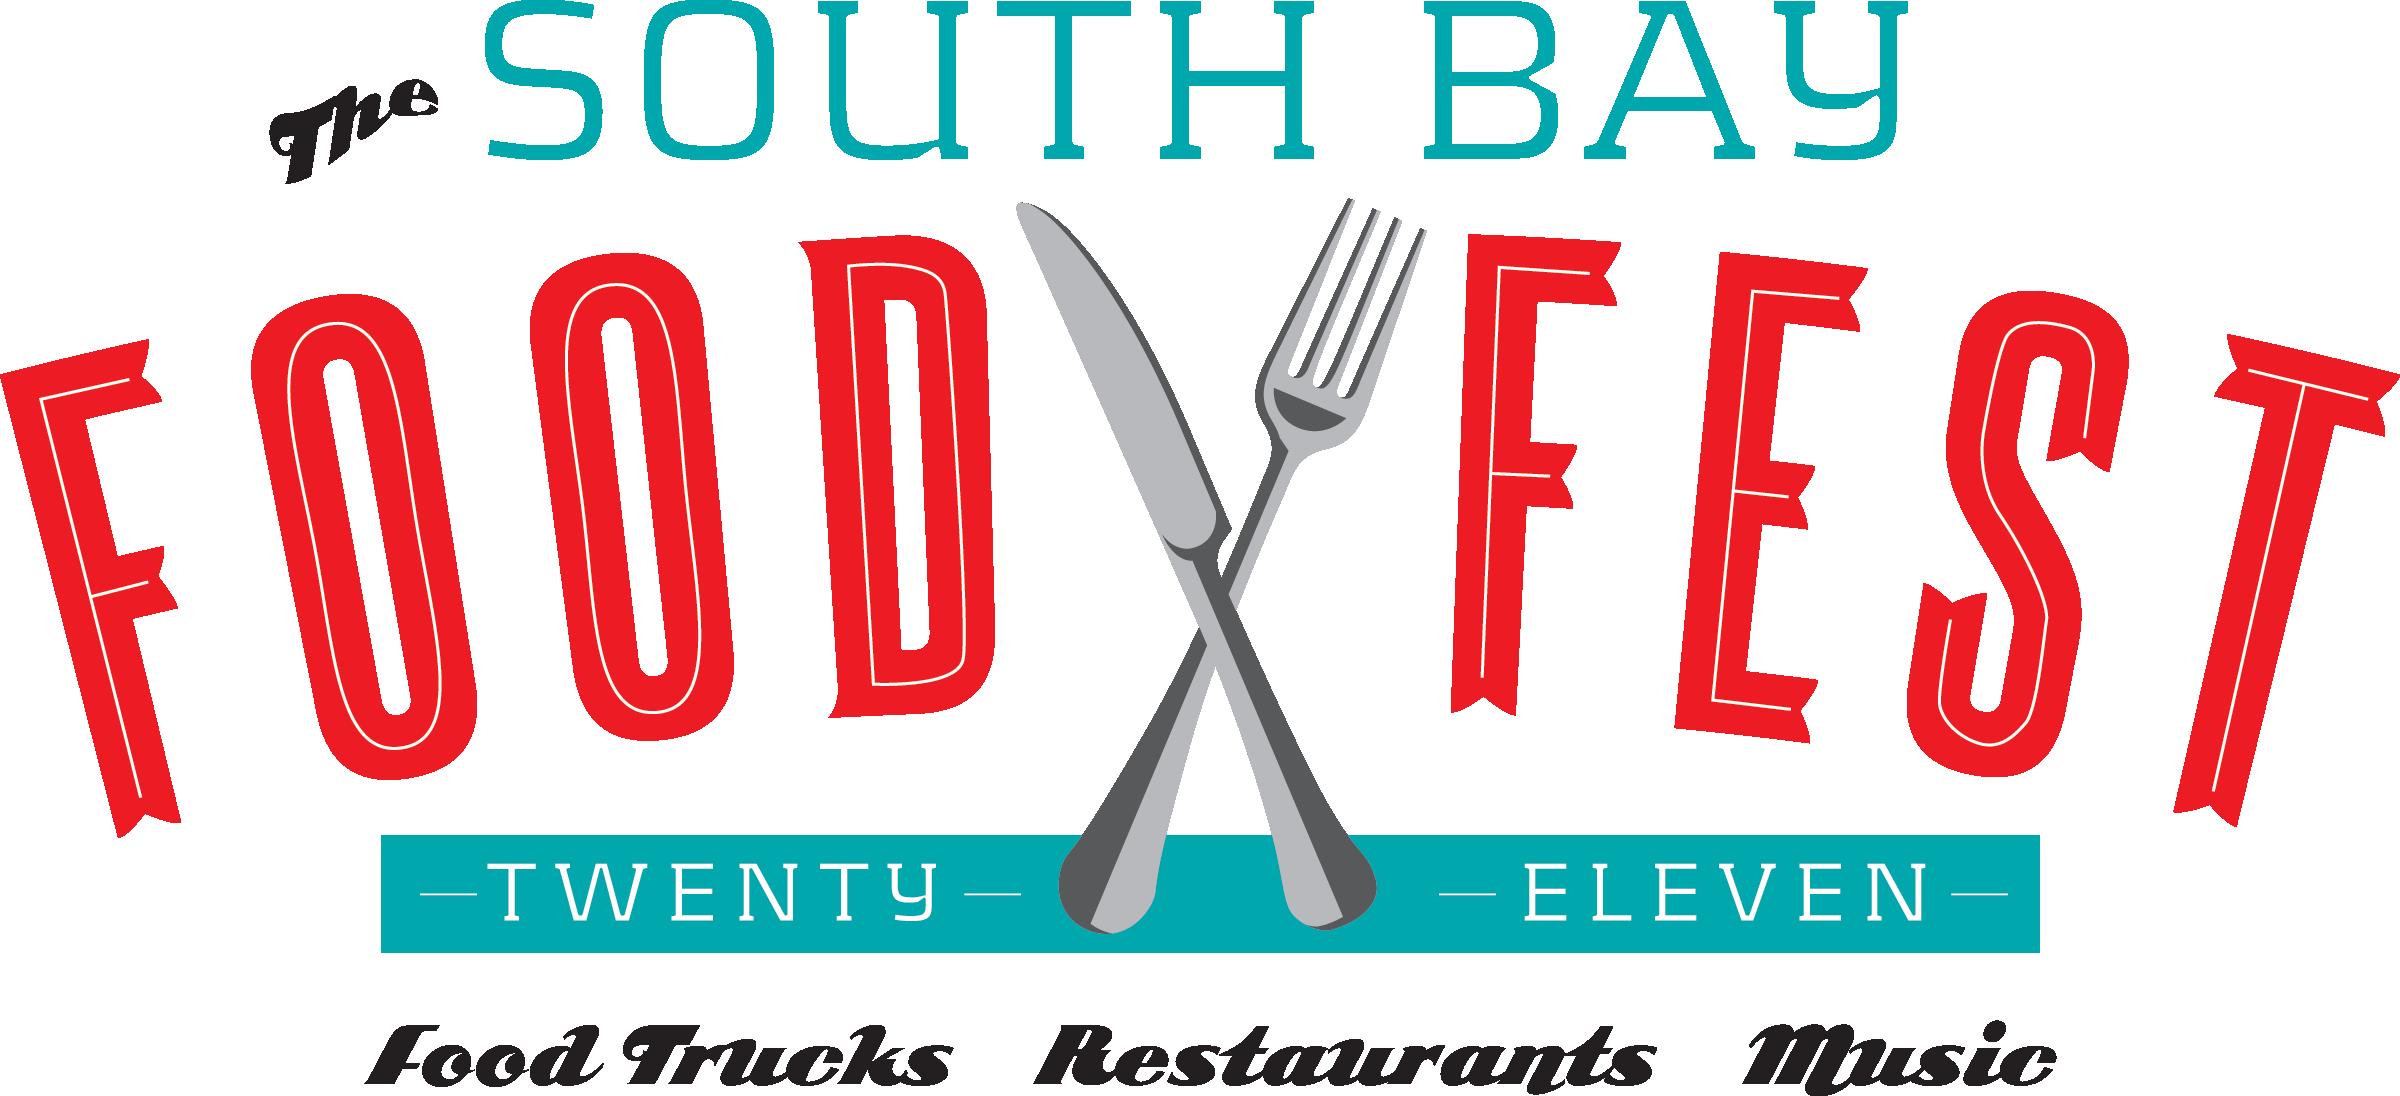 South-Bay-Food-Fest.jpg